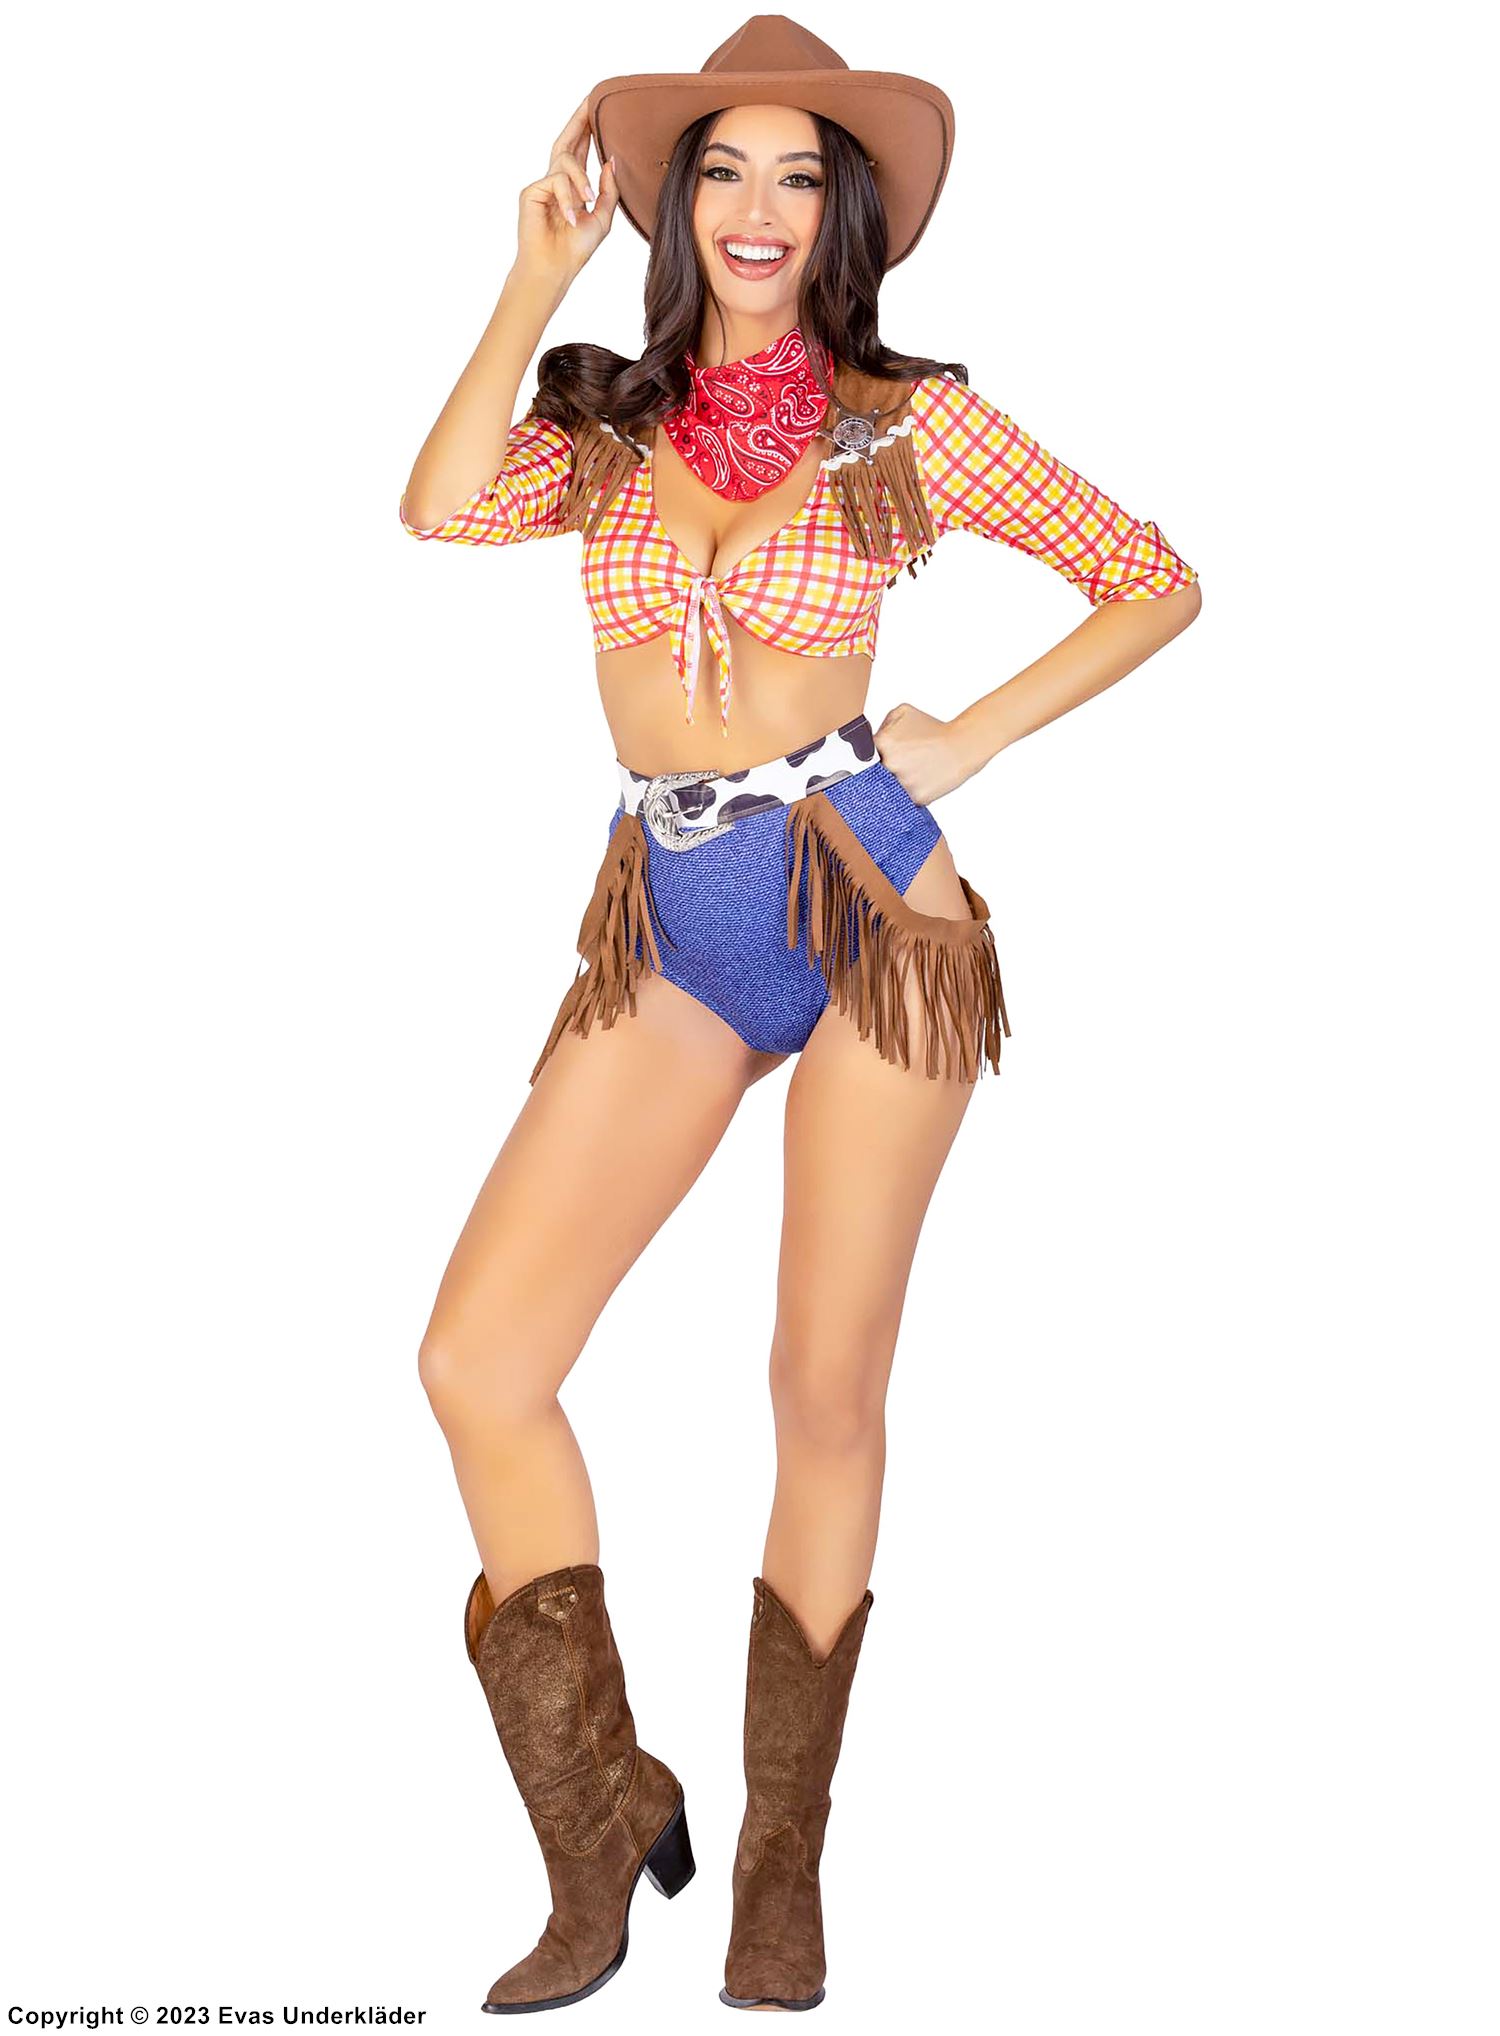 Woody aus Toy Story, Kostüm mit Top und Shorts, Fransen, 3/4-lange Ärmel, schottisch-kariertes Muster